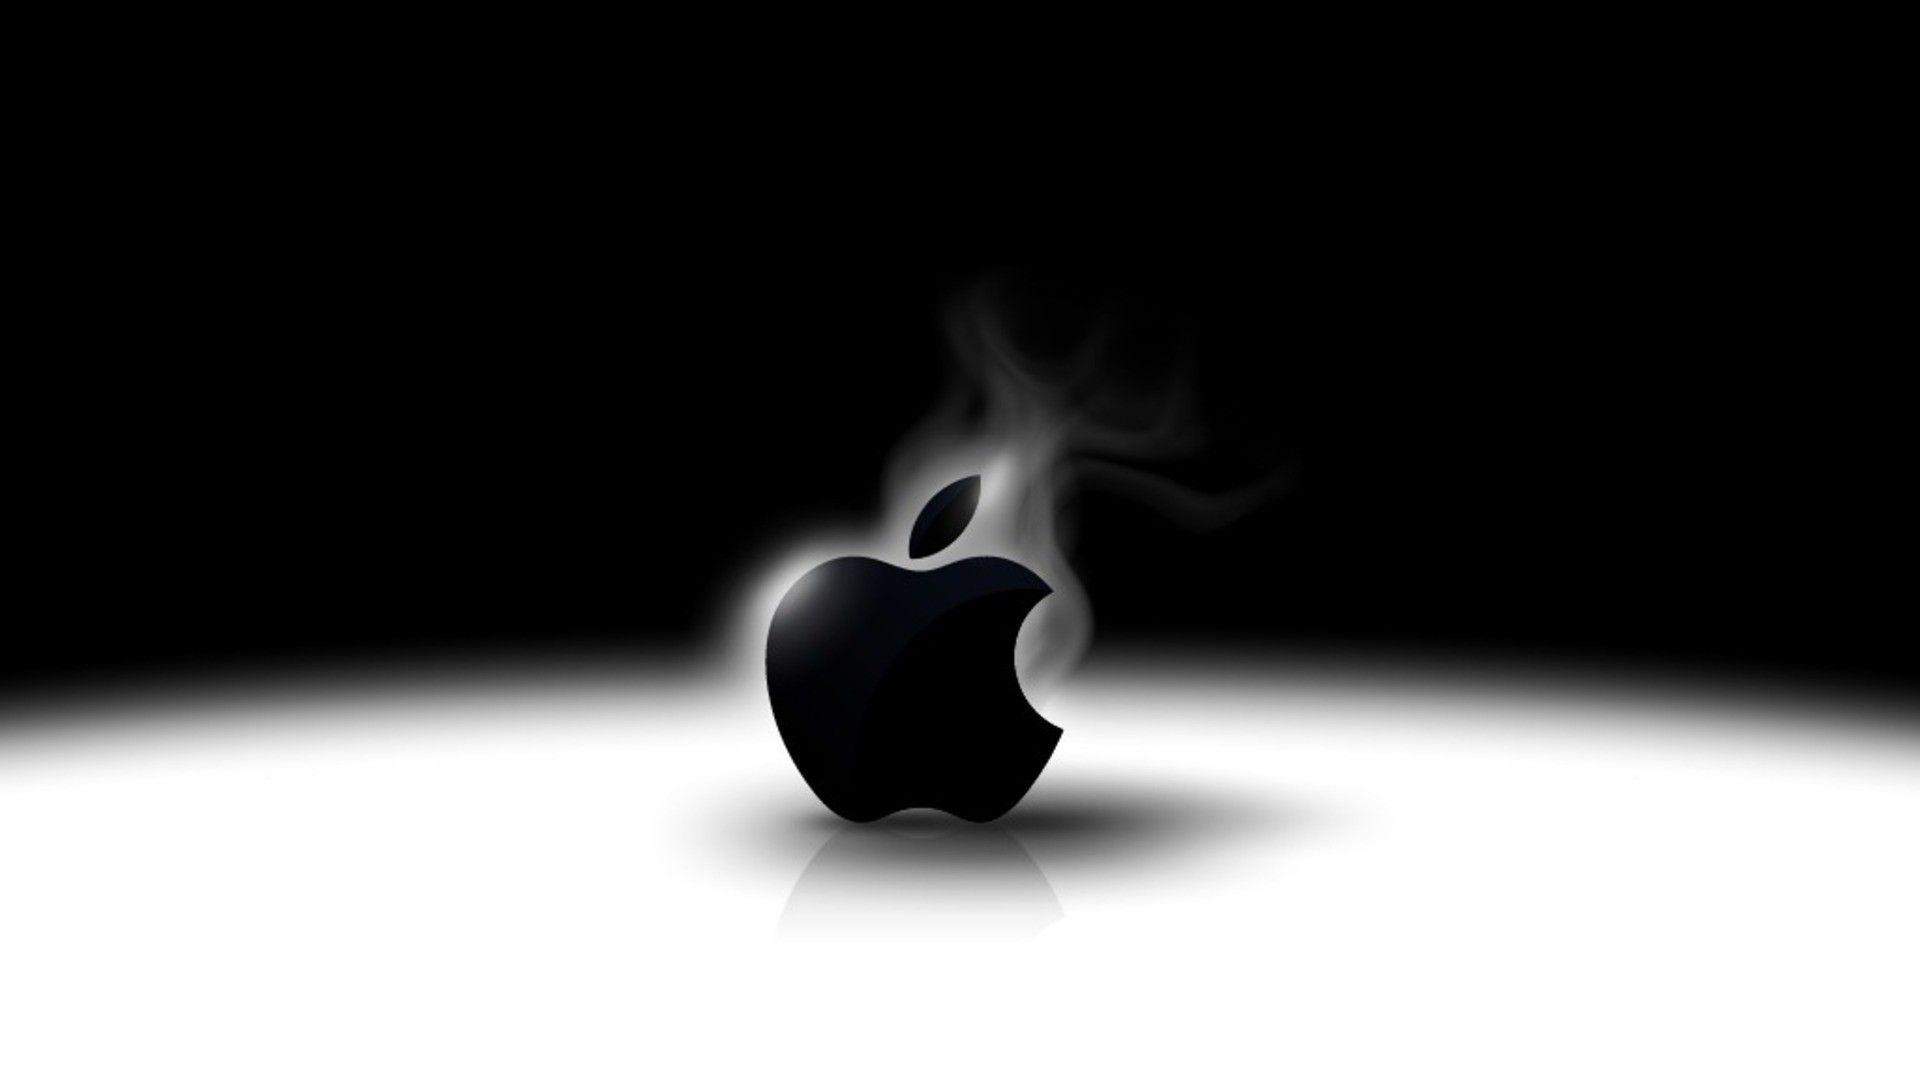 Fondos de Apple en blanco y negro